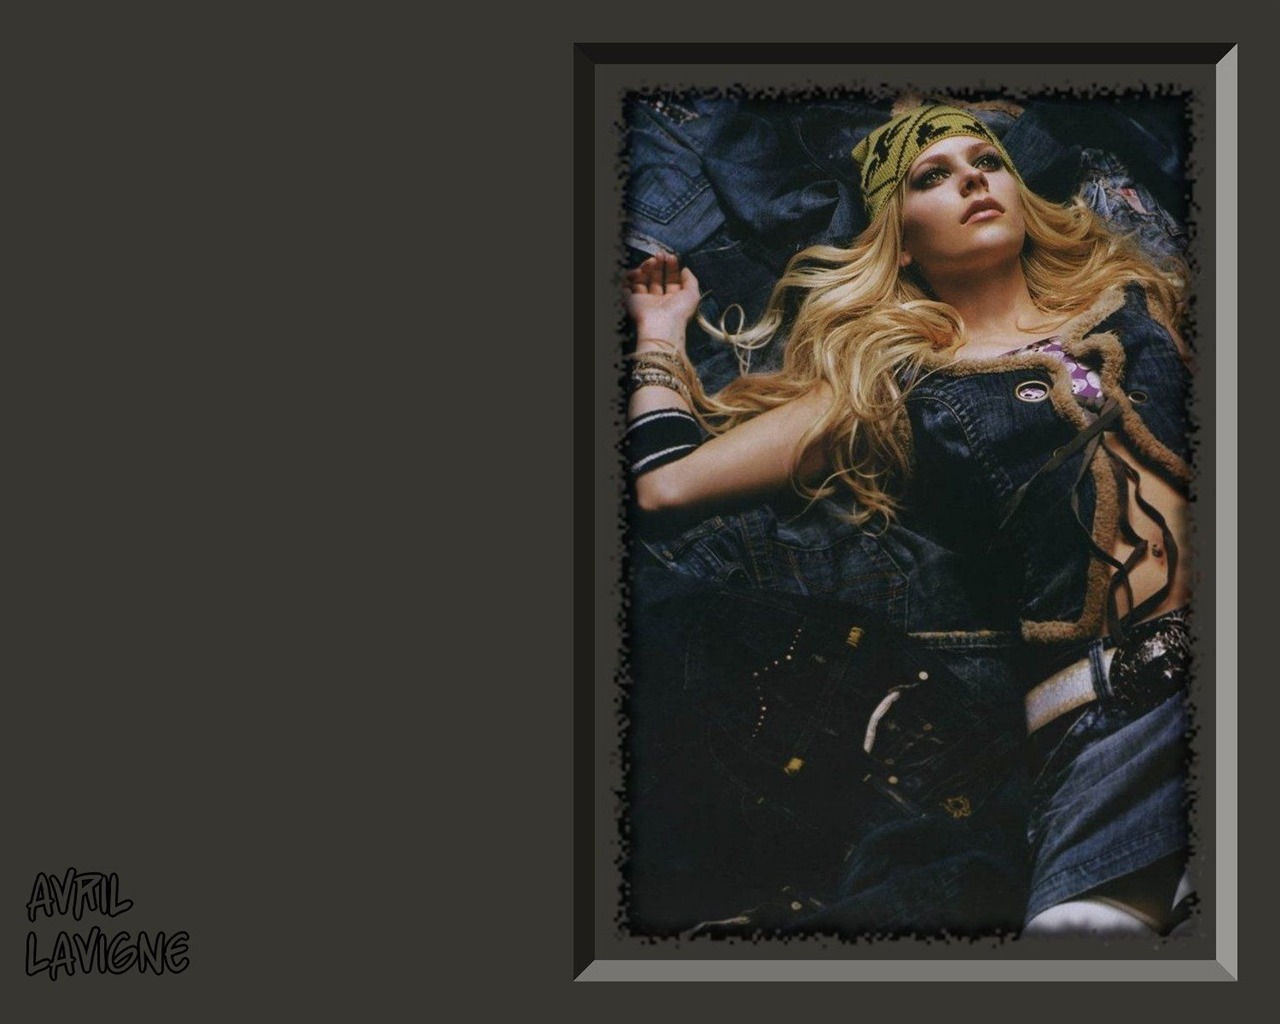 Avril Lavigne beau fond d'écran #23 - 1280x1024